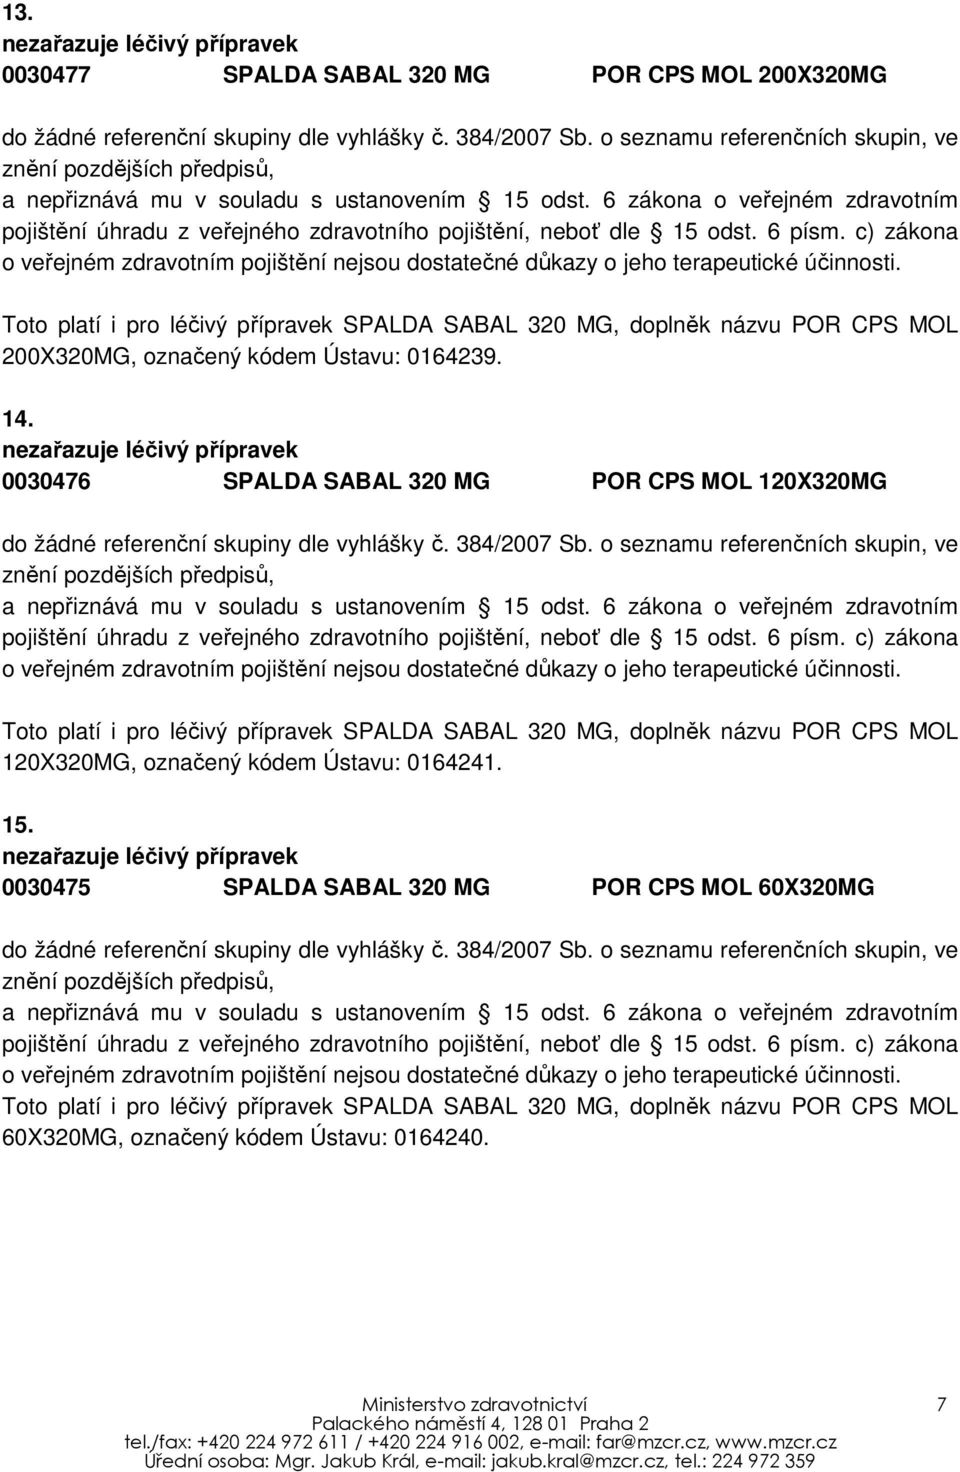 0030476 SPALDA SABAL 320 MG POR CPS MOL 120X320MG Toto platí i pro léčivý přípravek SPALDA SABAL 320 MG, doplněk názvu POR CPS MOL